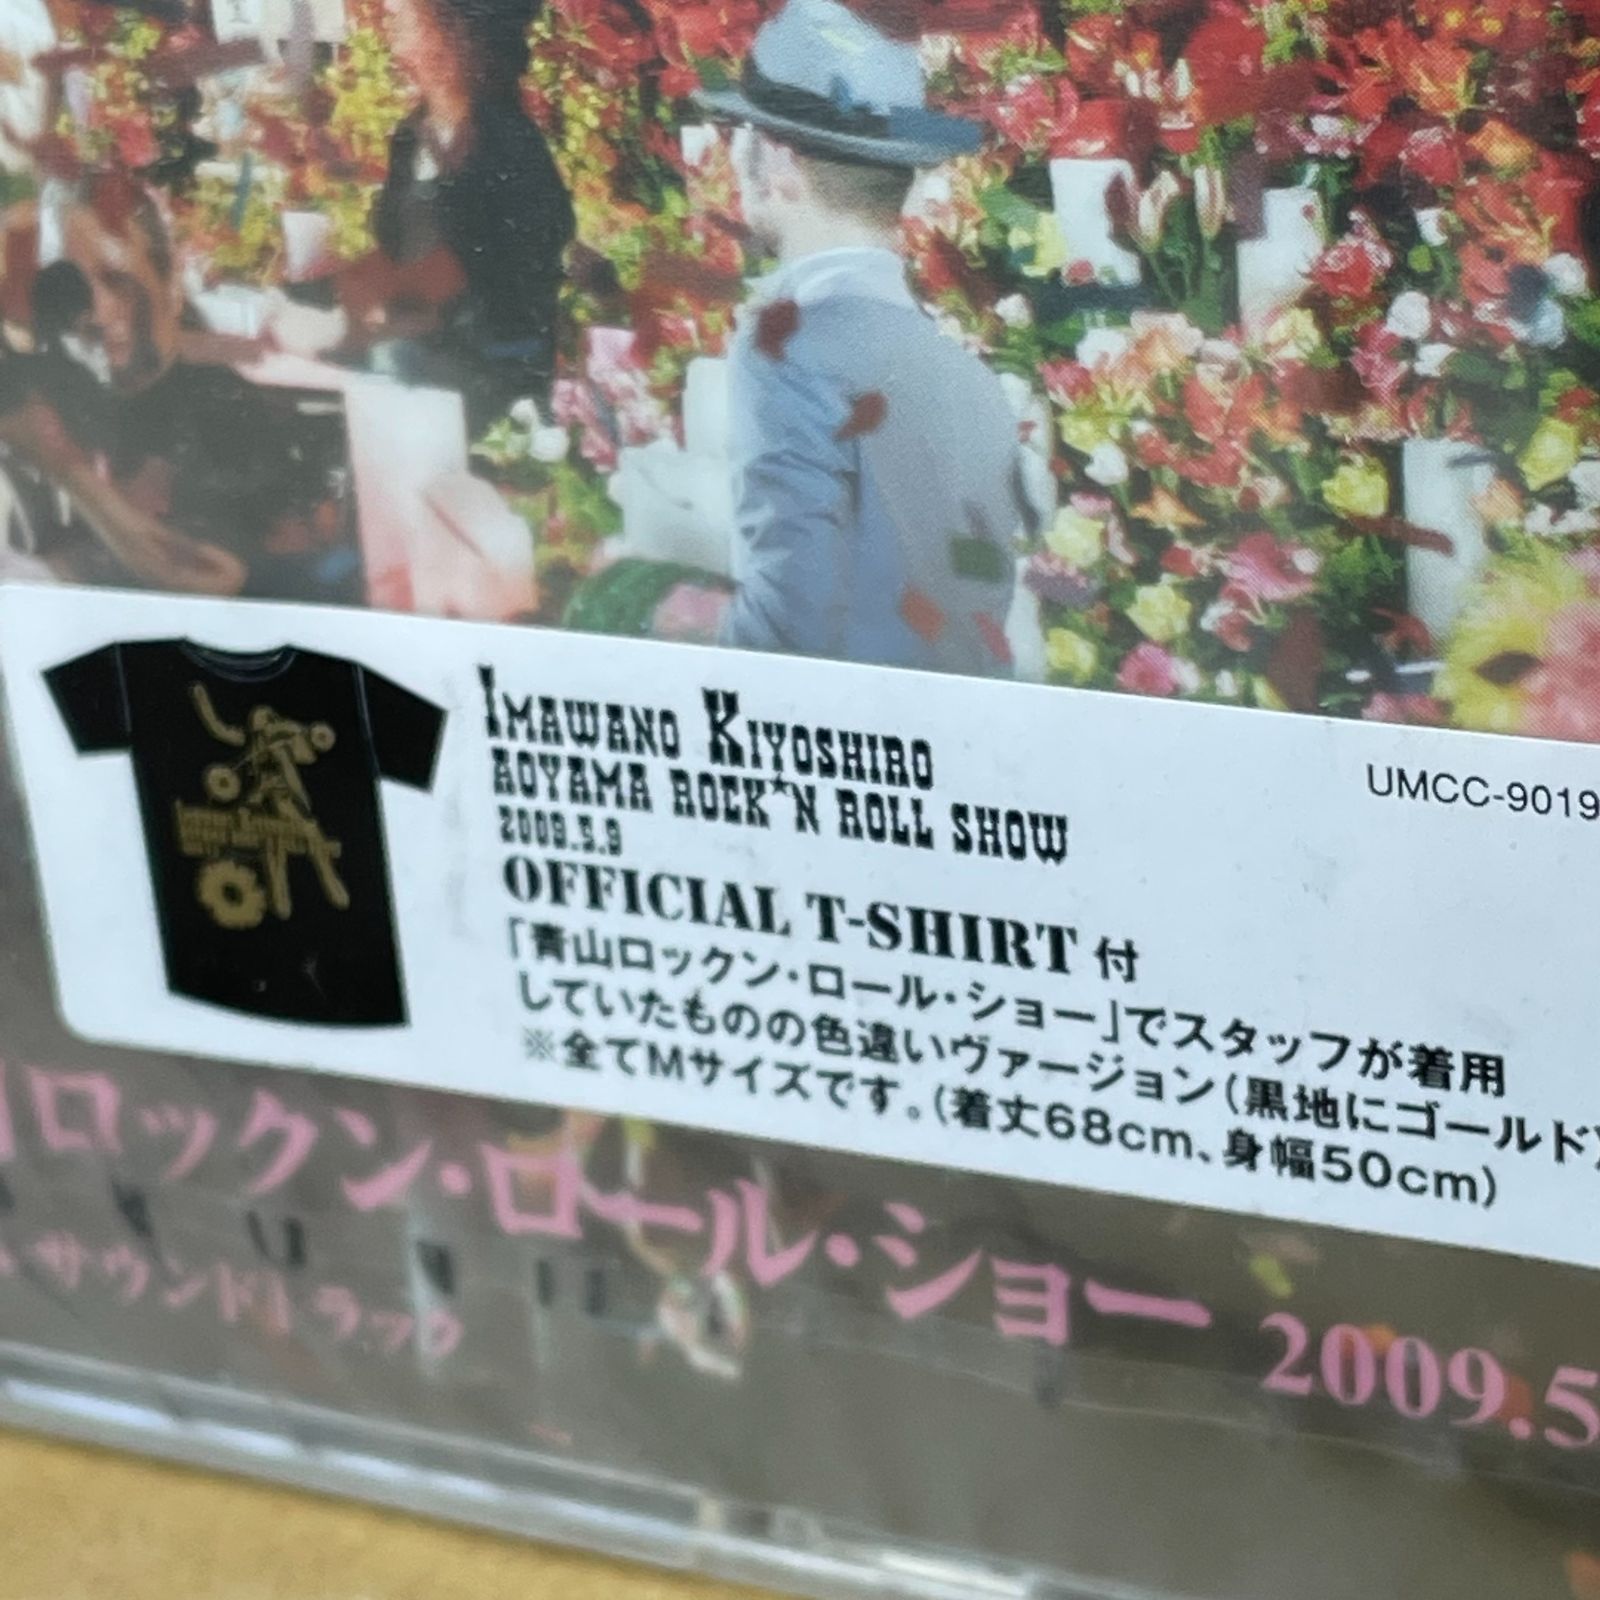 忌野清志郎 青山ロックン・ロール・ショー 2009.5.9 Tシャツ付き